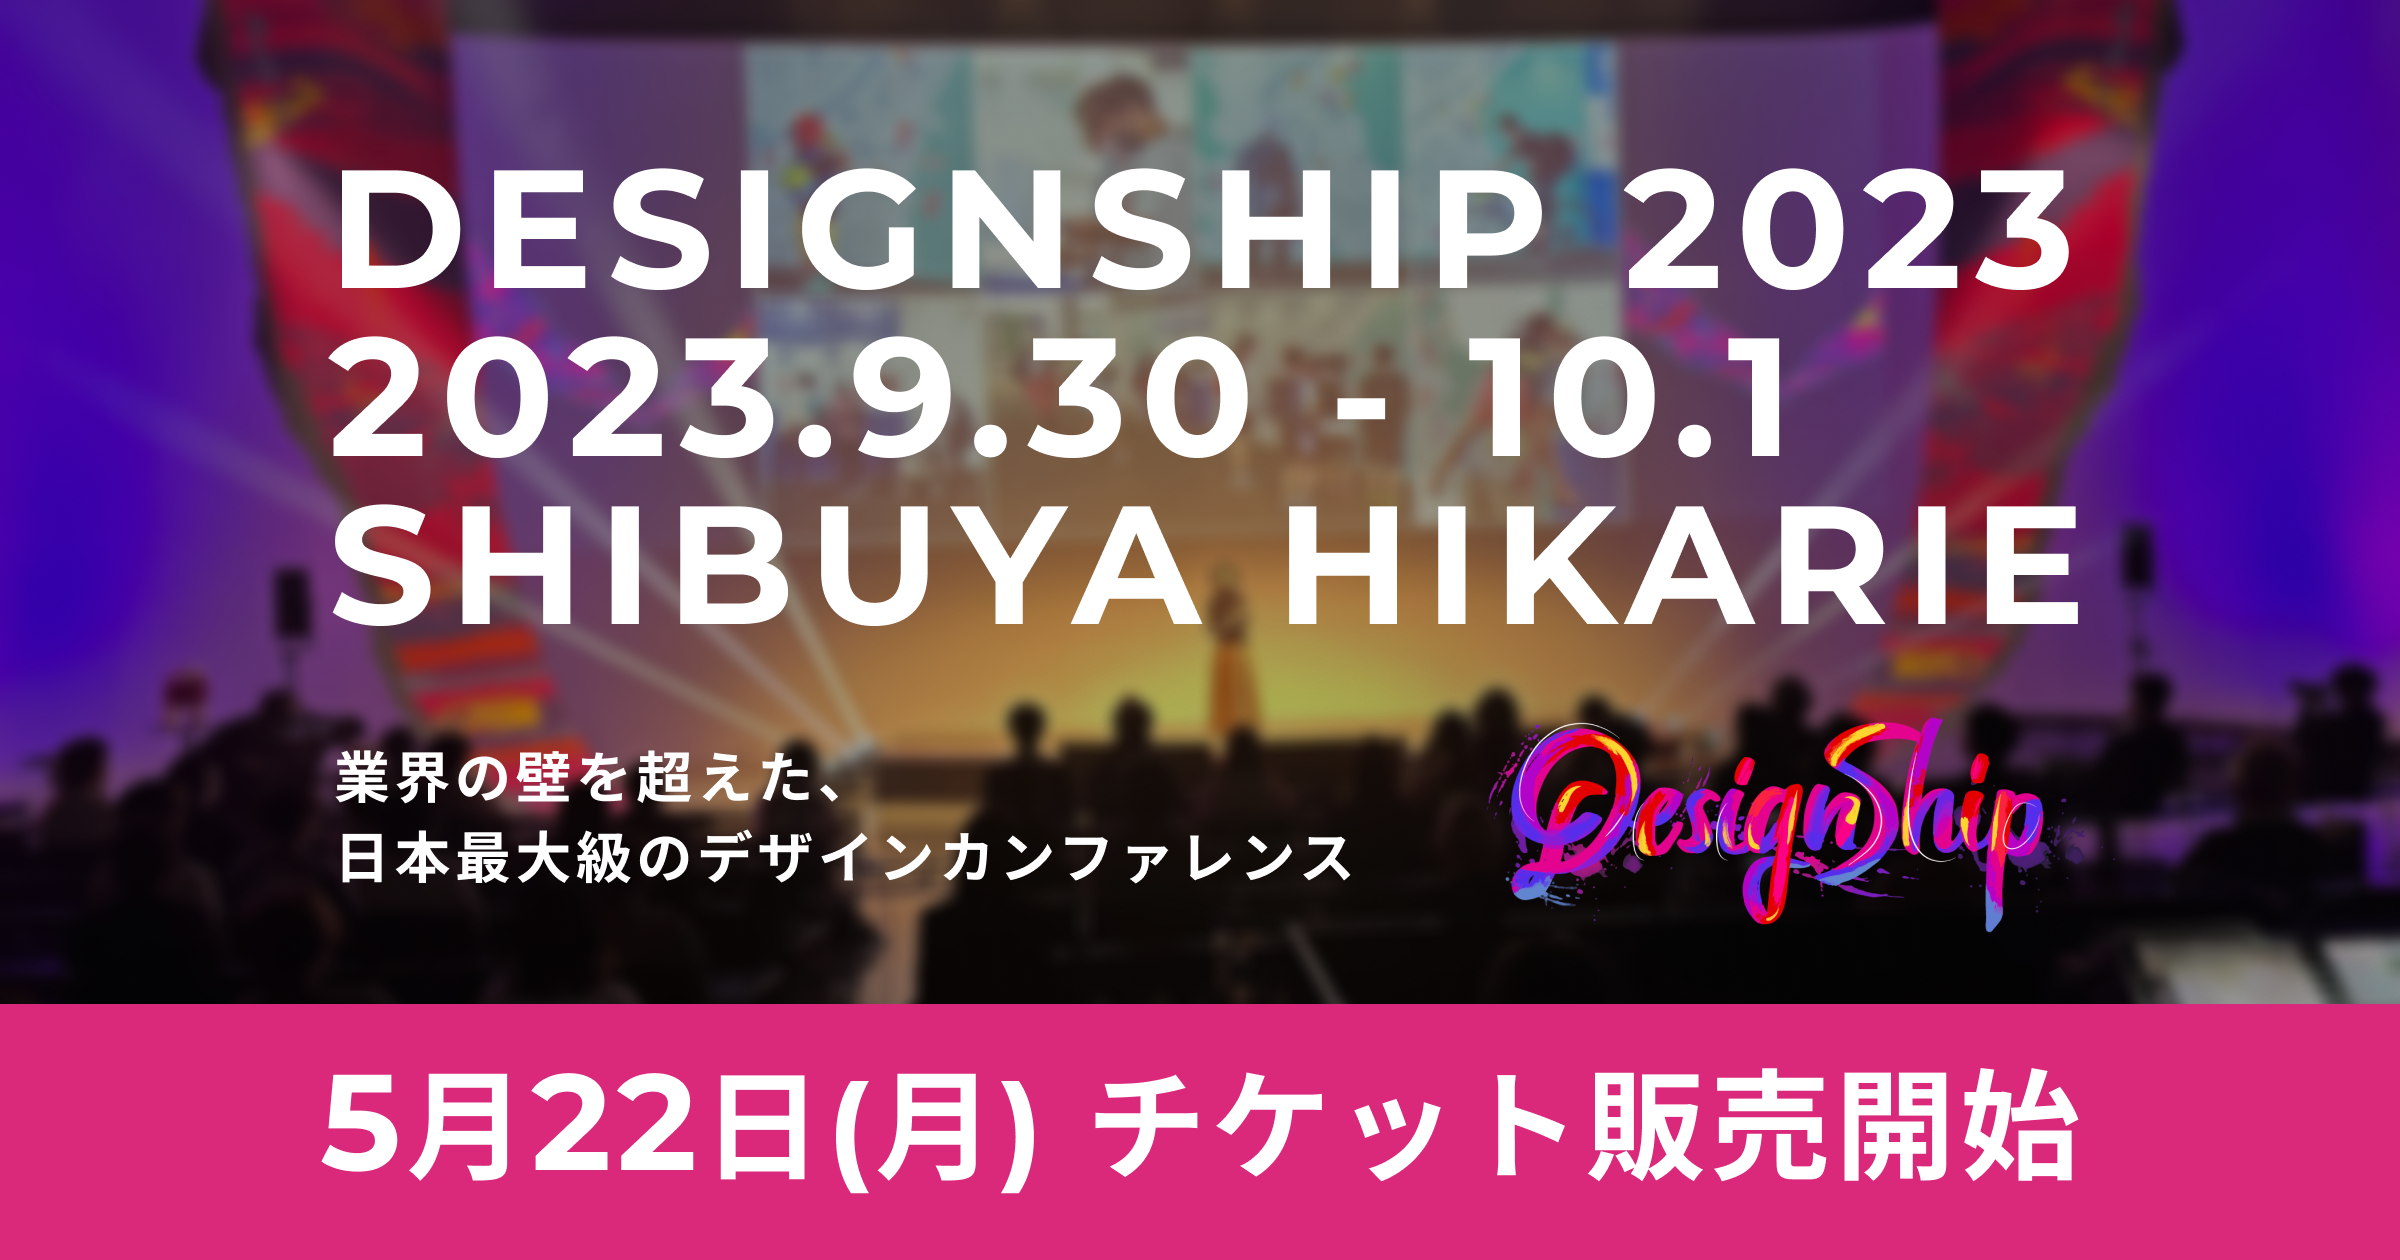 Designship 2023 | 業界の壁を越えた、日本最大級のデザインカンファレンス